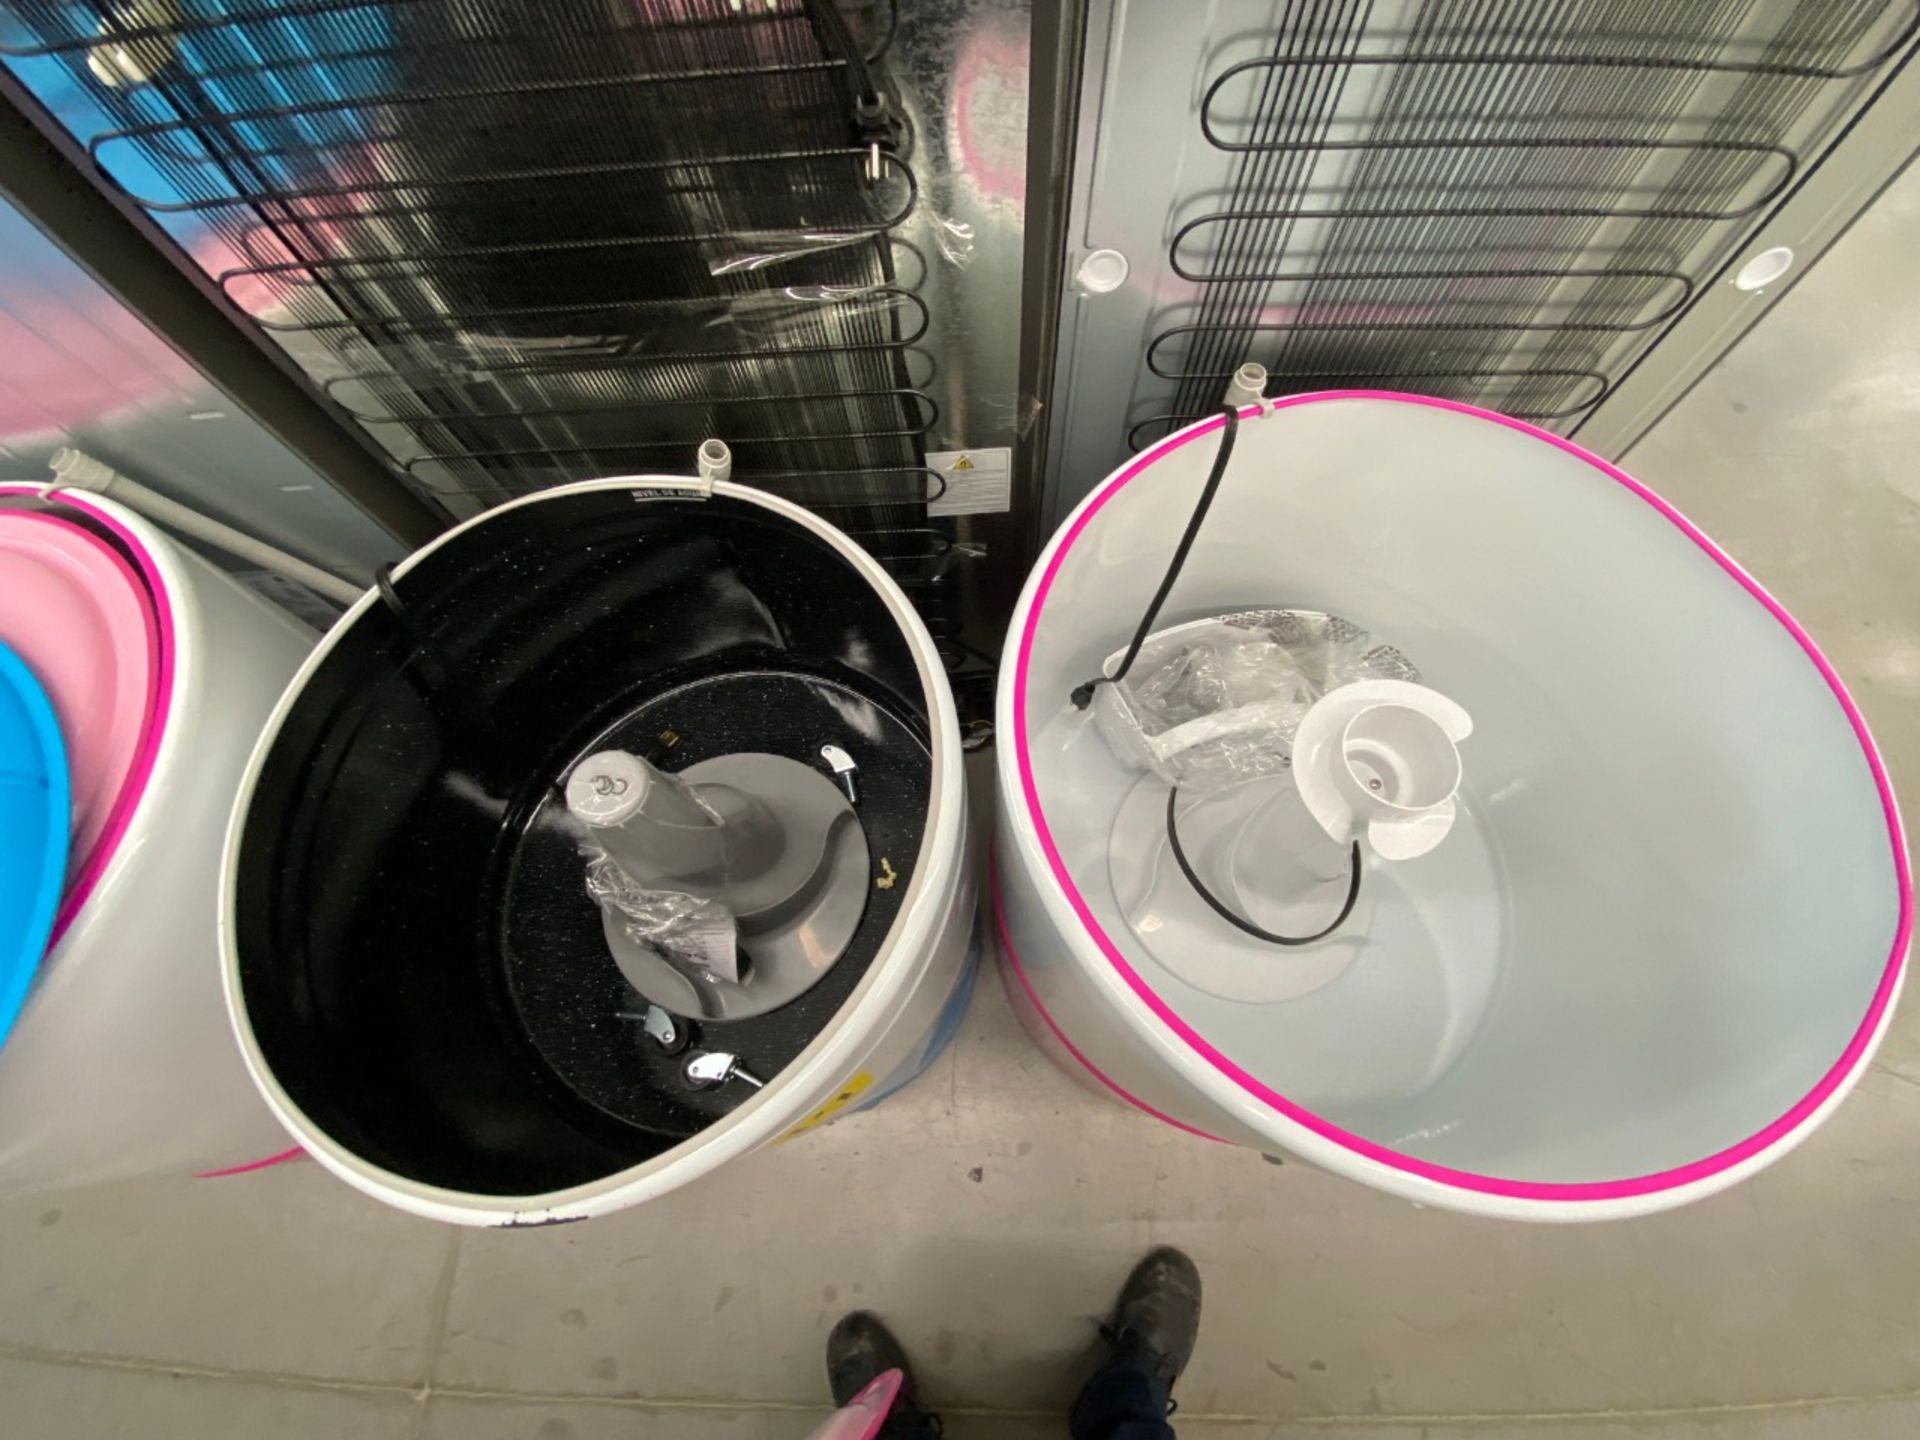 Lote conformado por 2 lavadoras: 1 Lavadora de 14 KG, Marca Koblenz, Modelo LRKW14B - Image 7 of 9